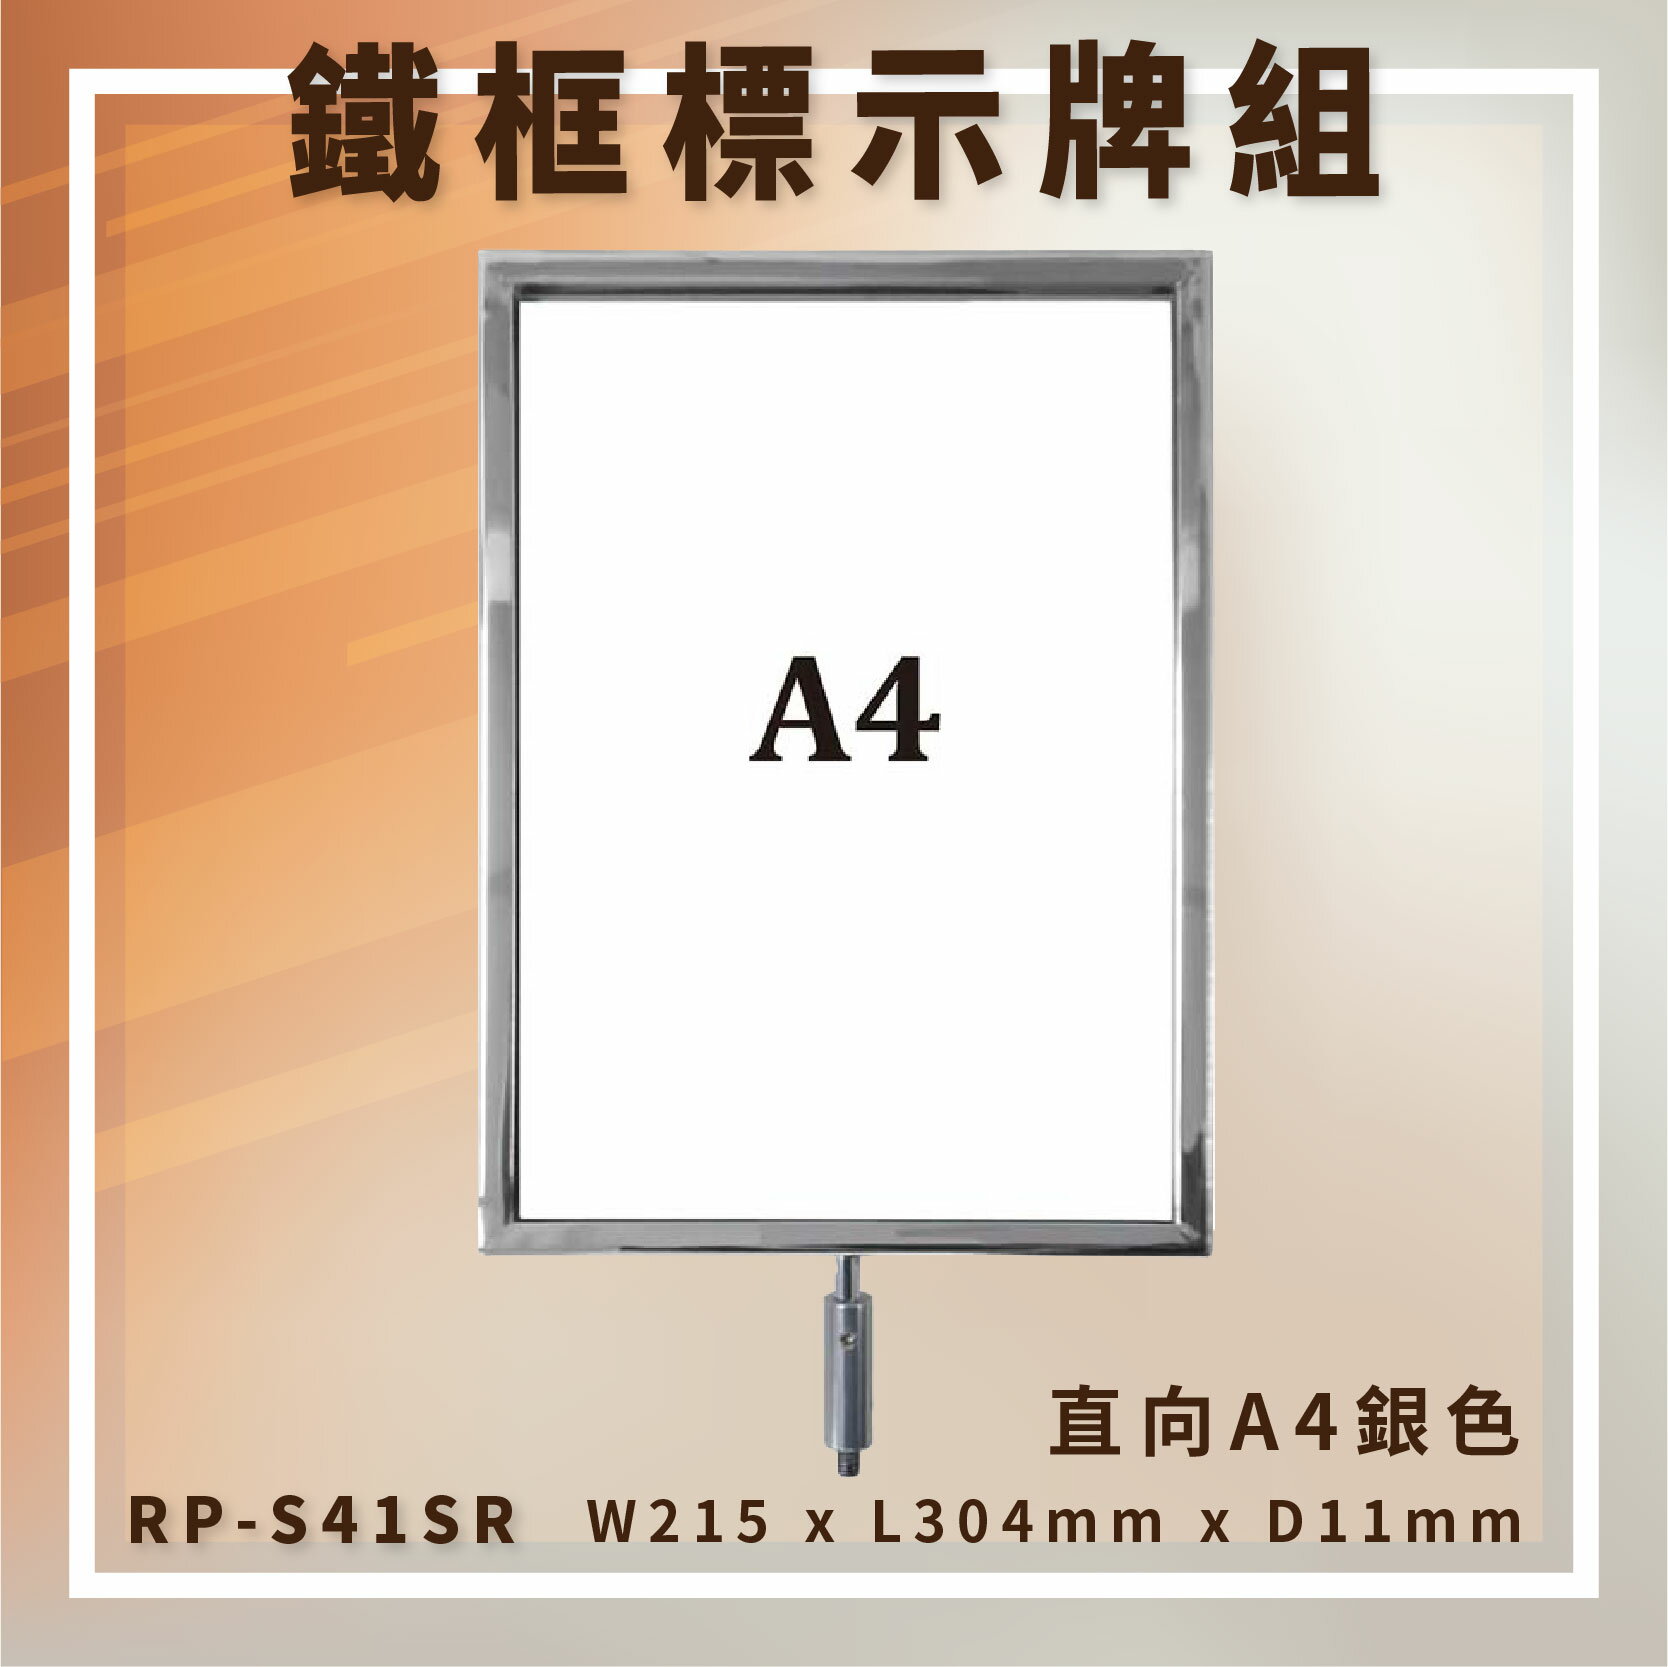 【台灣製造】RP-S41SR 圓柱型電鍍鐵框標示牌組 A4直向 告示牌 指標牌 伸縮帶欄柱配件 廣告牌 DM